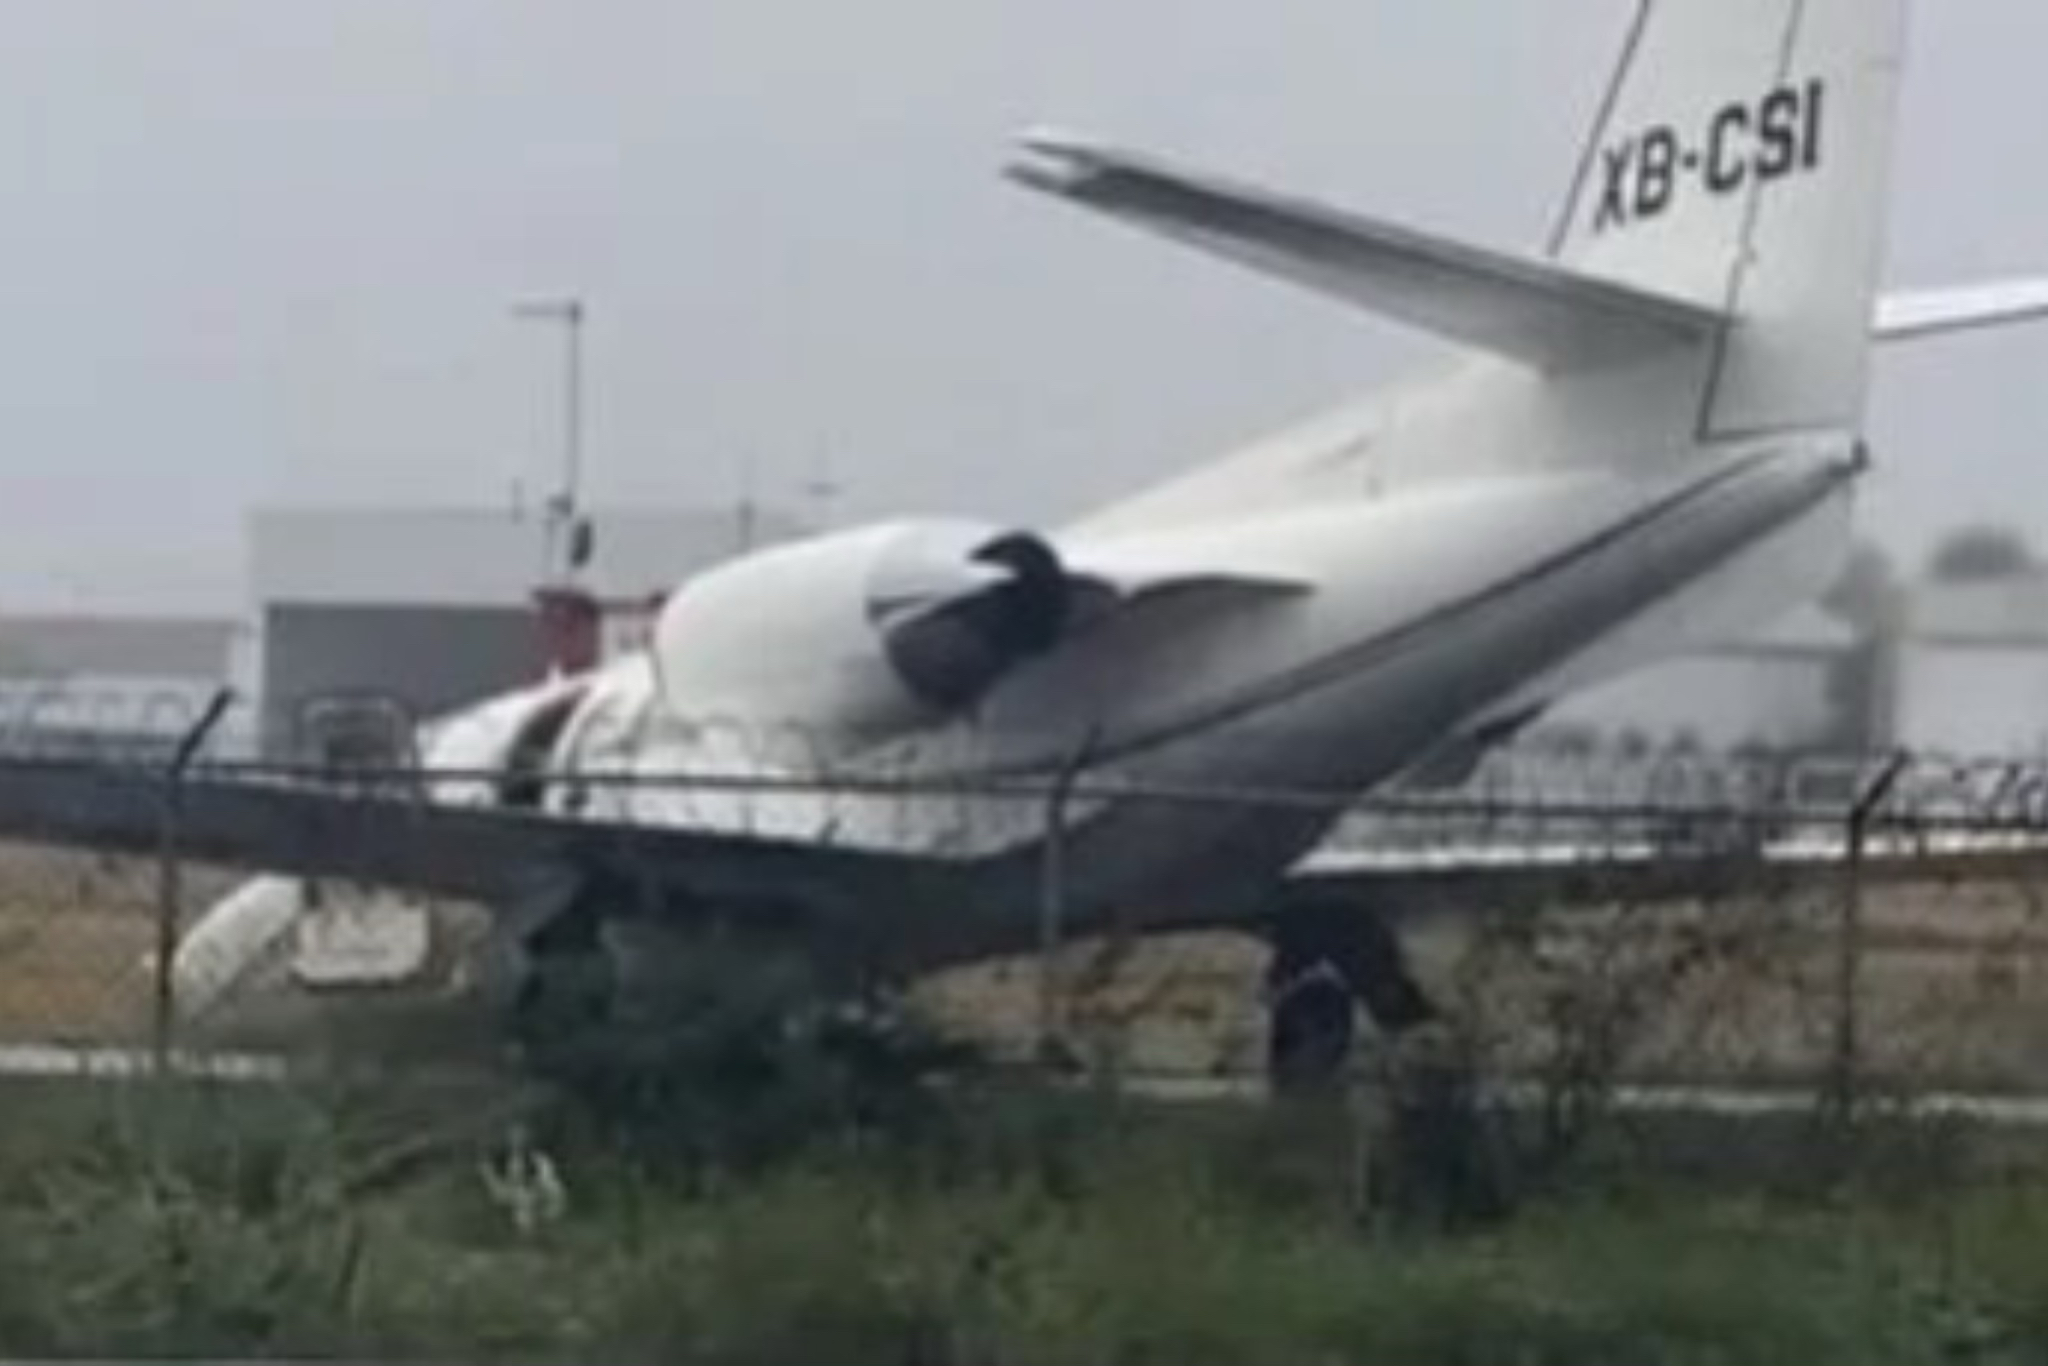 Cae avioneta en el Aeropuerto del Norte en Escobedo